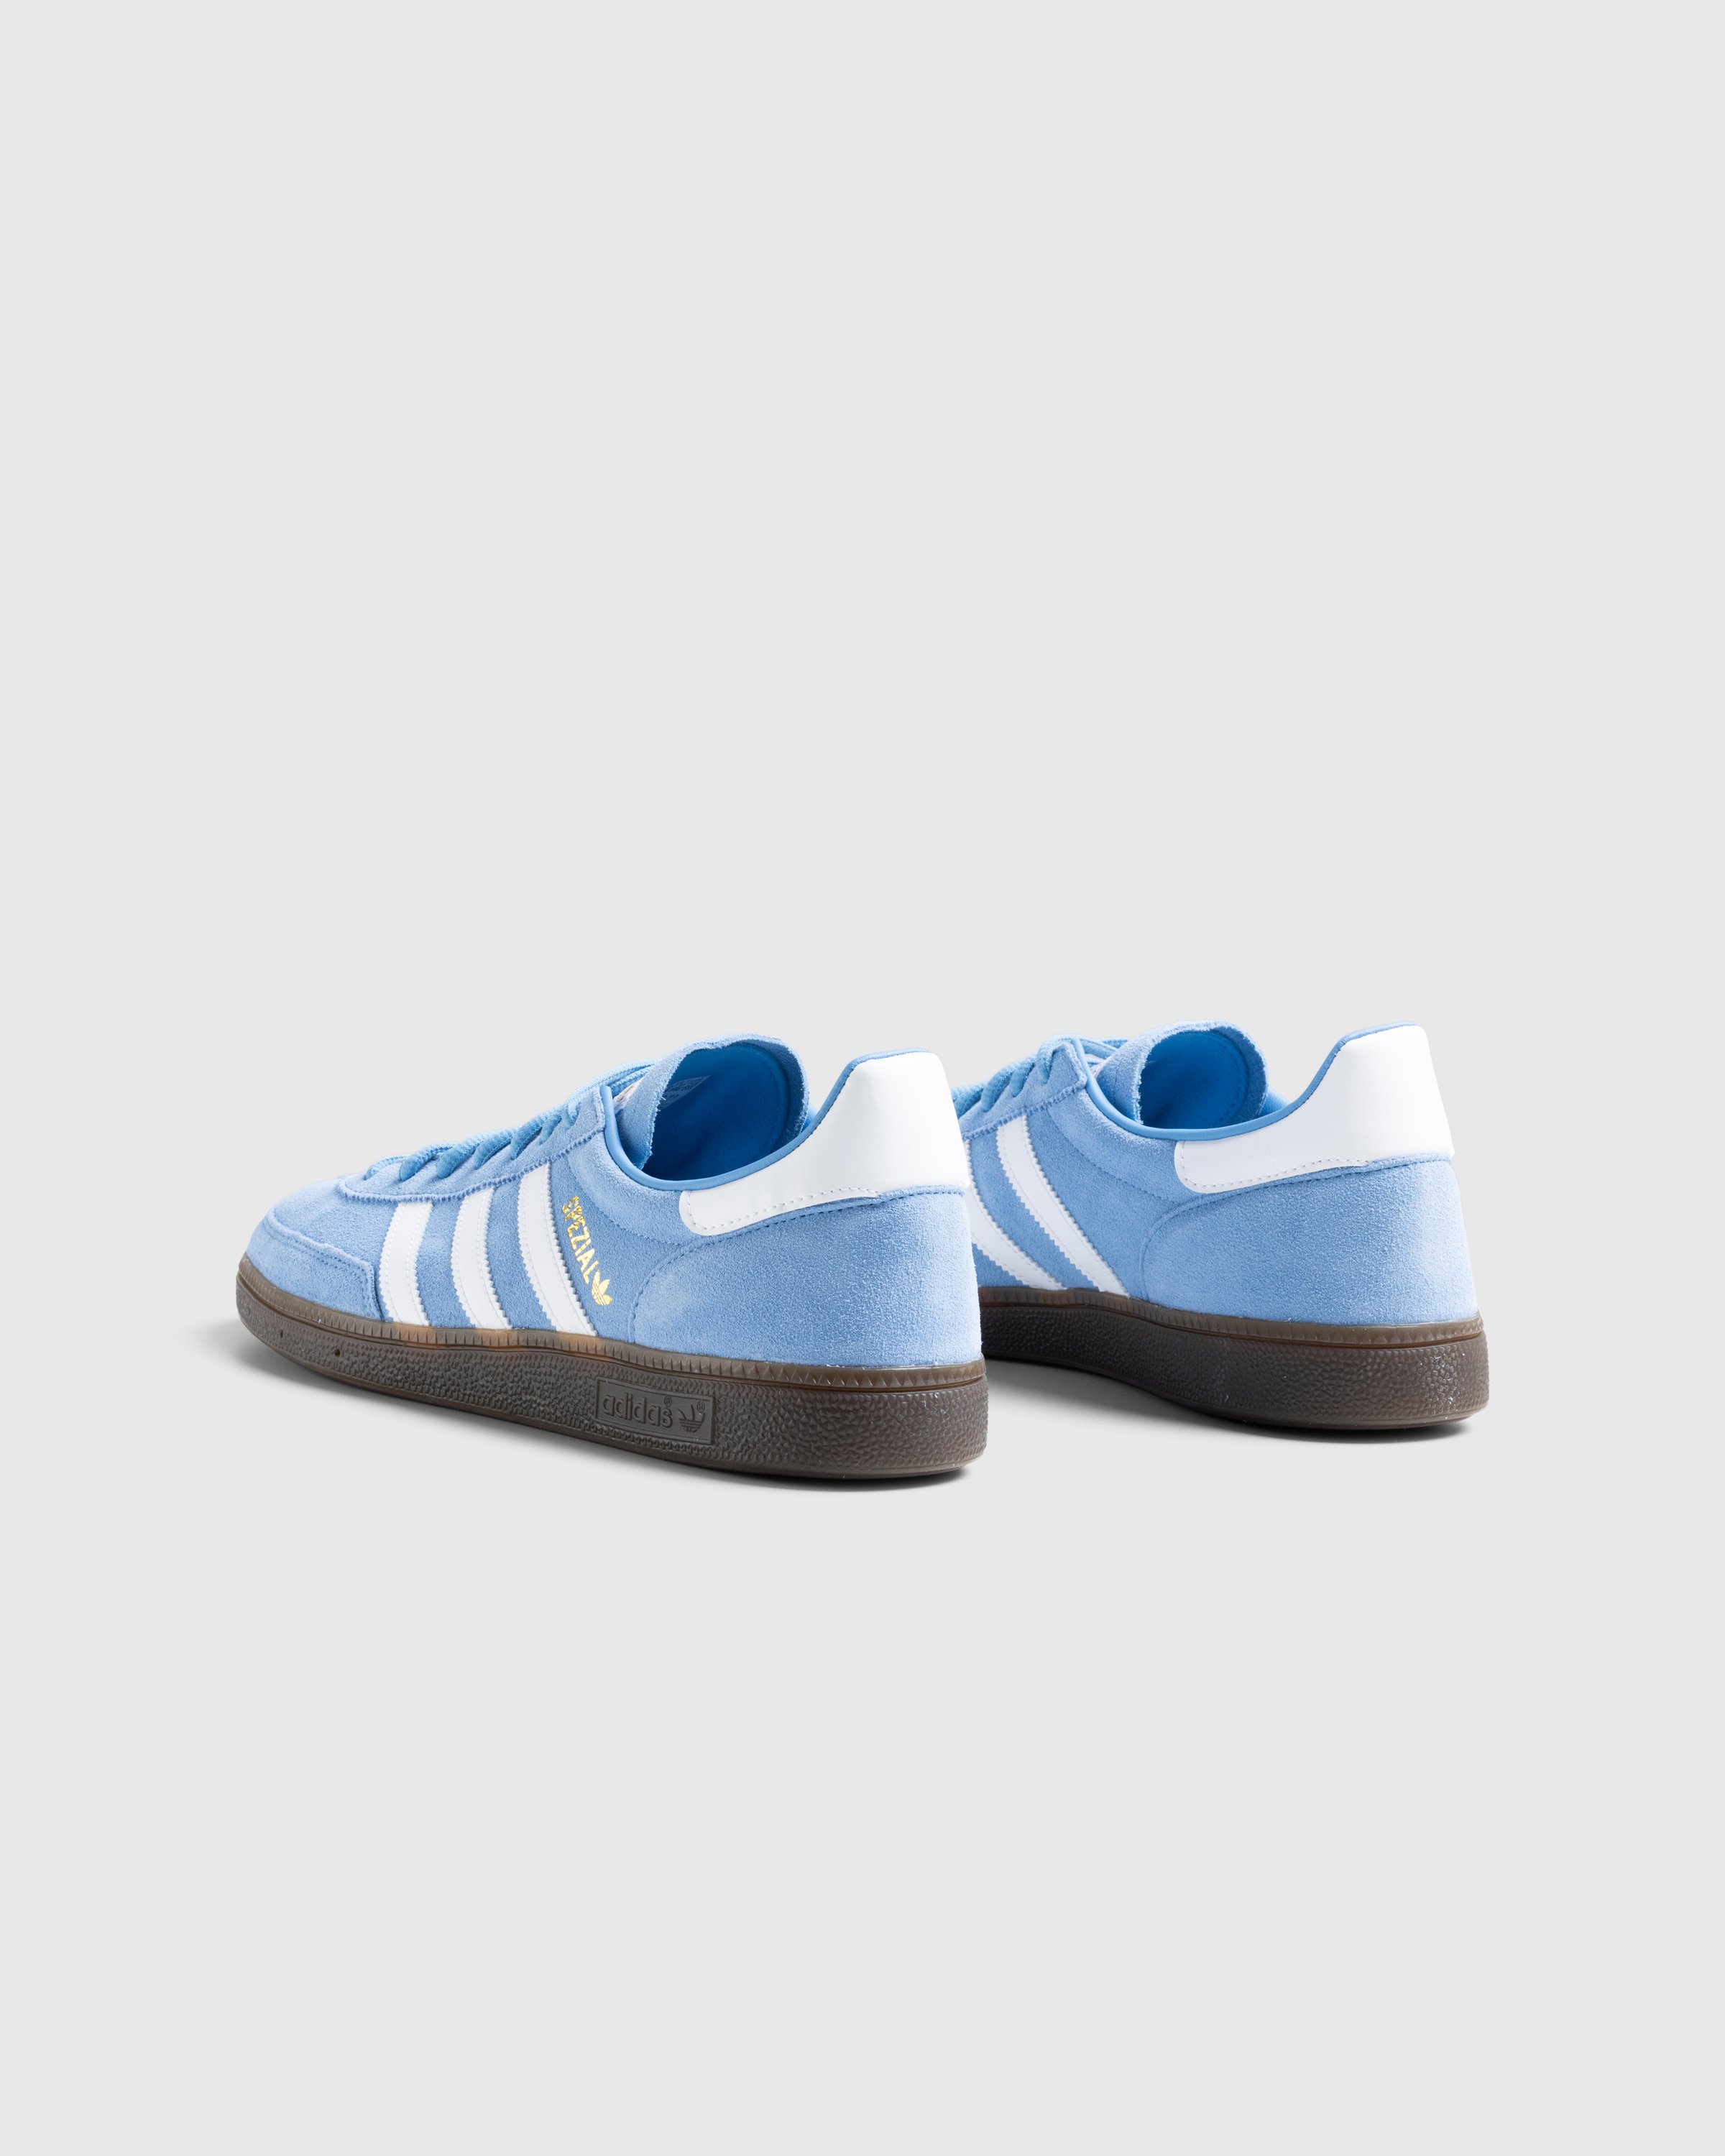 Adidas - Handball Spezial    Ltblue/Ftwwht/Gum5 - Footwear - Blue - Image 4